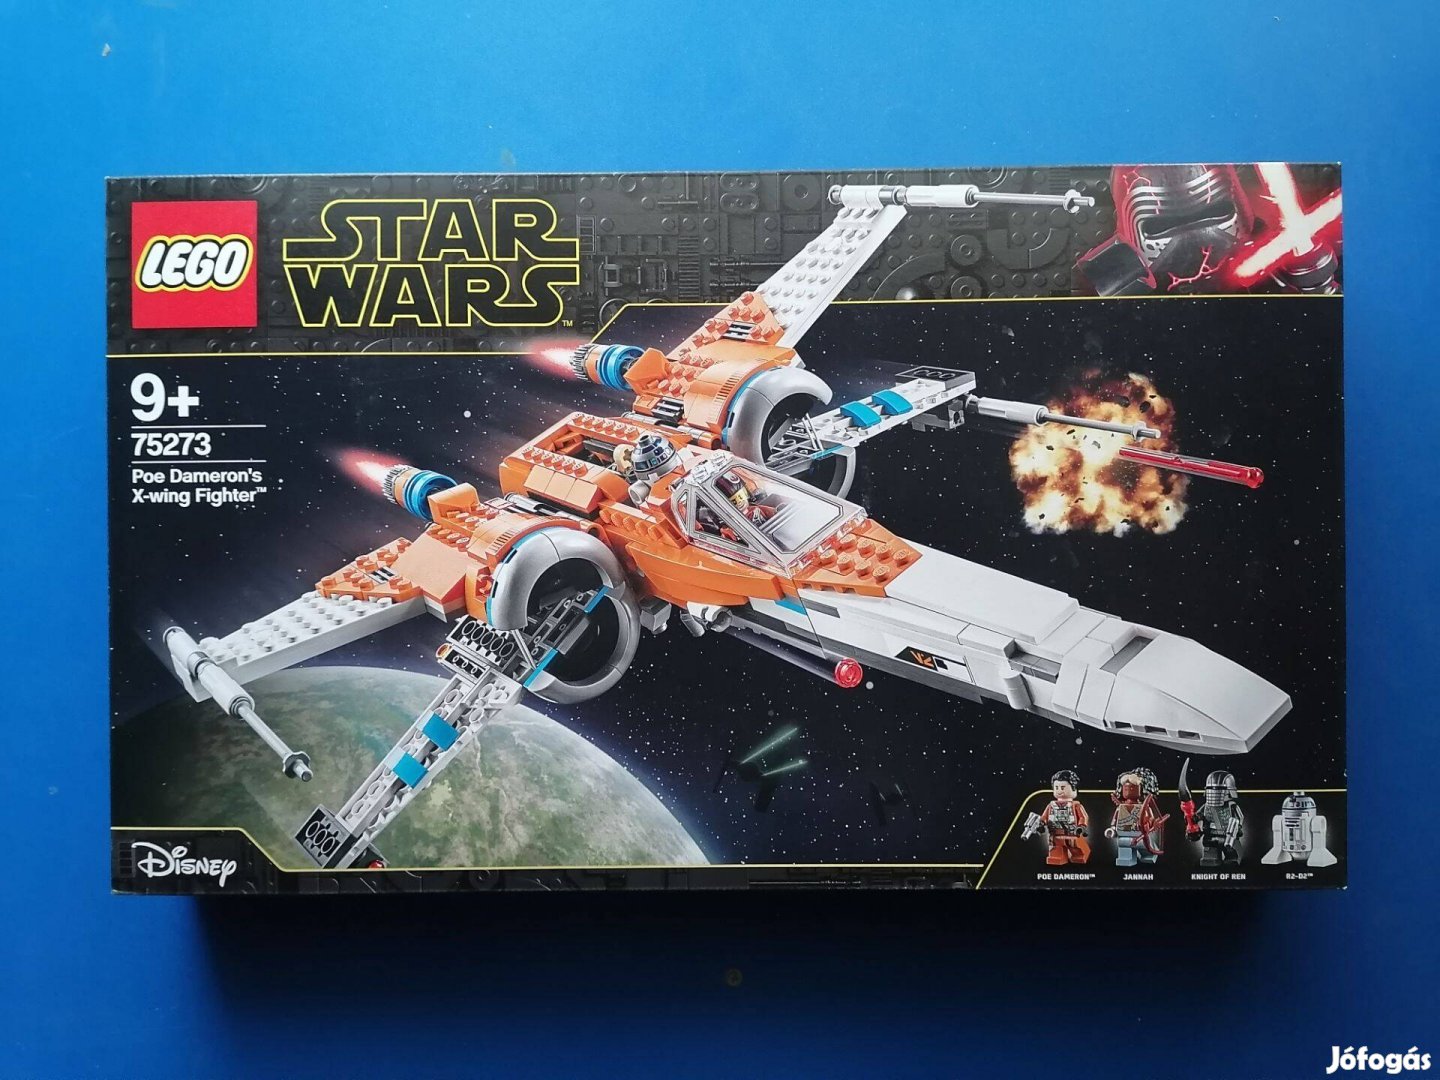 Lego Star Wars - Poe Dameron X-szárnyú vadászgépe 75273 Új, bontatlan